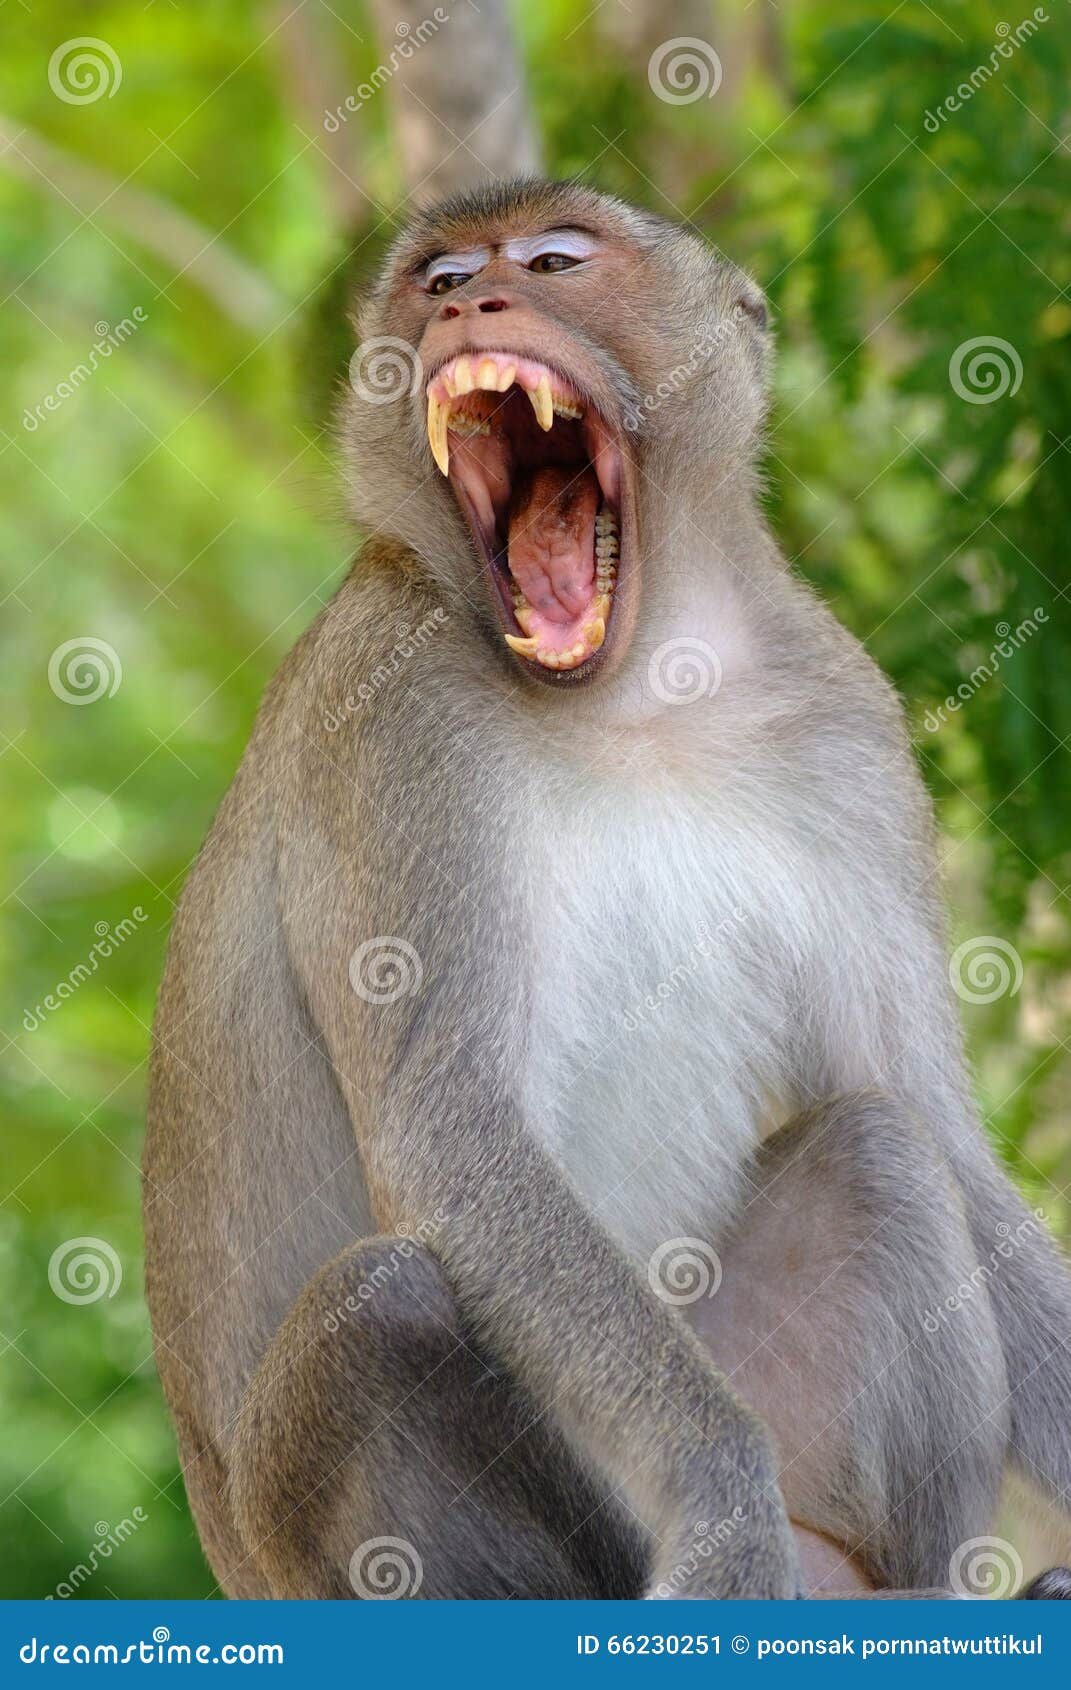 monkey-open-mouth-jungle-66230251.jpg